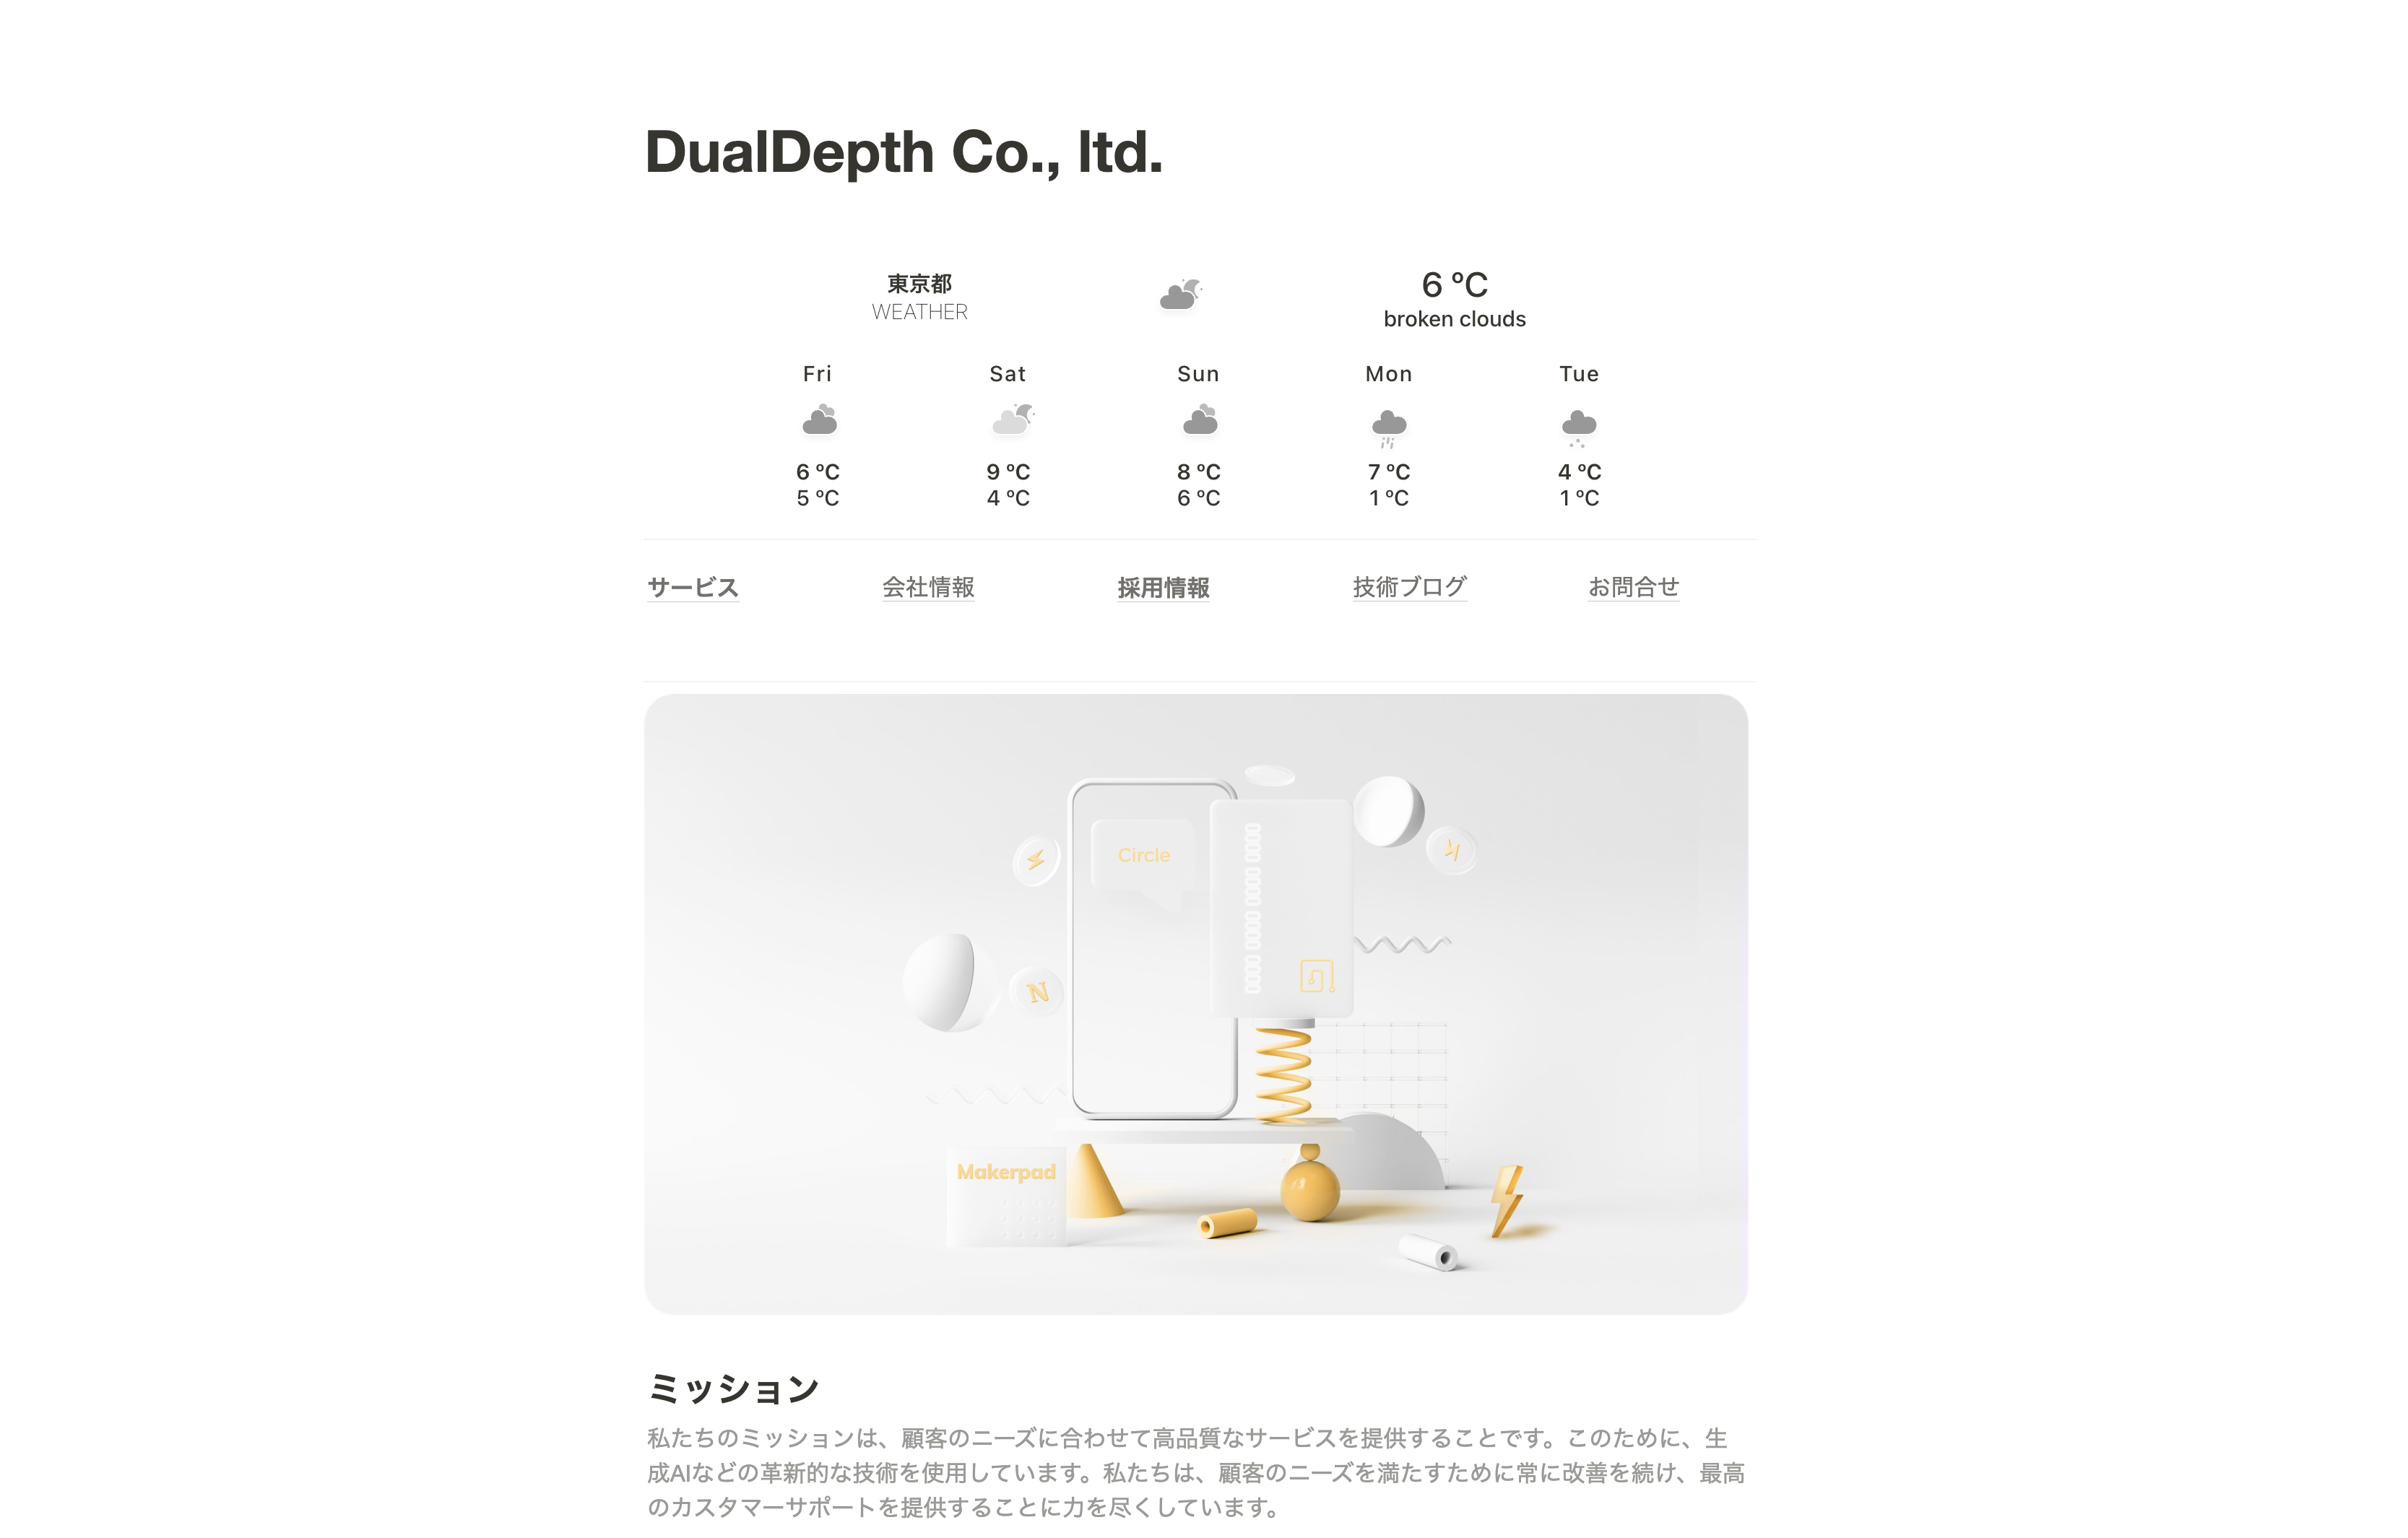 Dual Depth株式会社のDual Depth株式会社:システム開発サービス